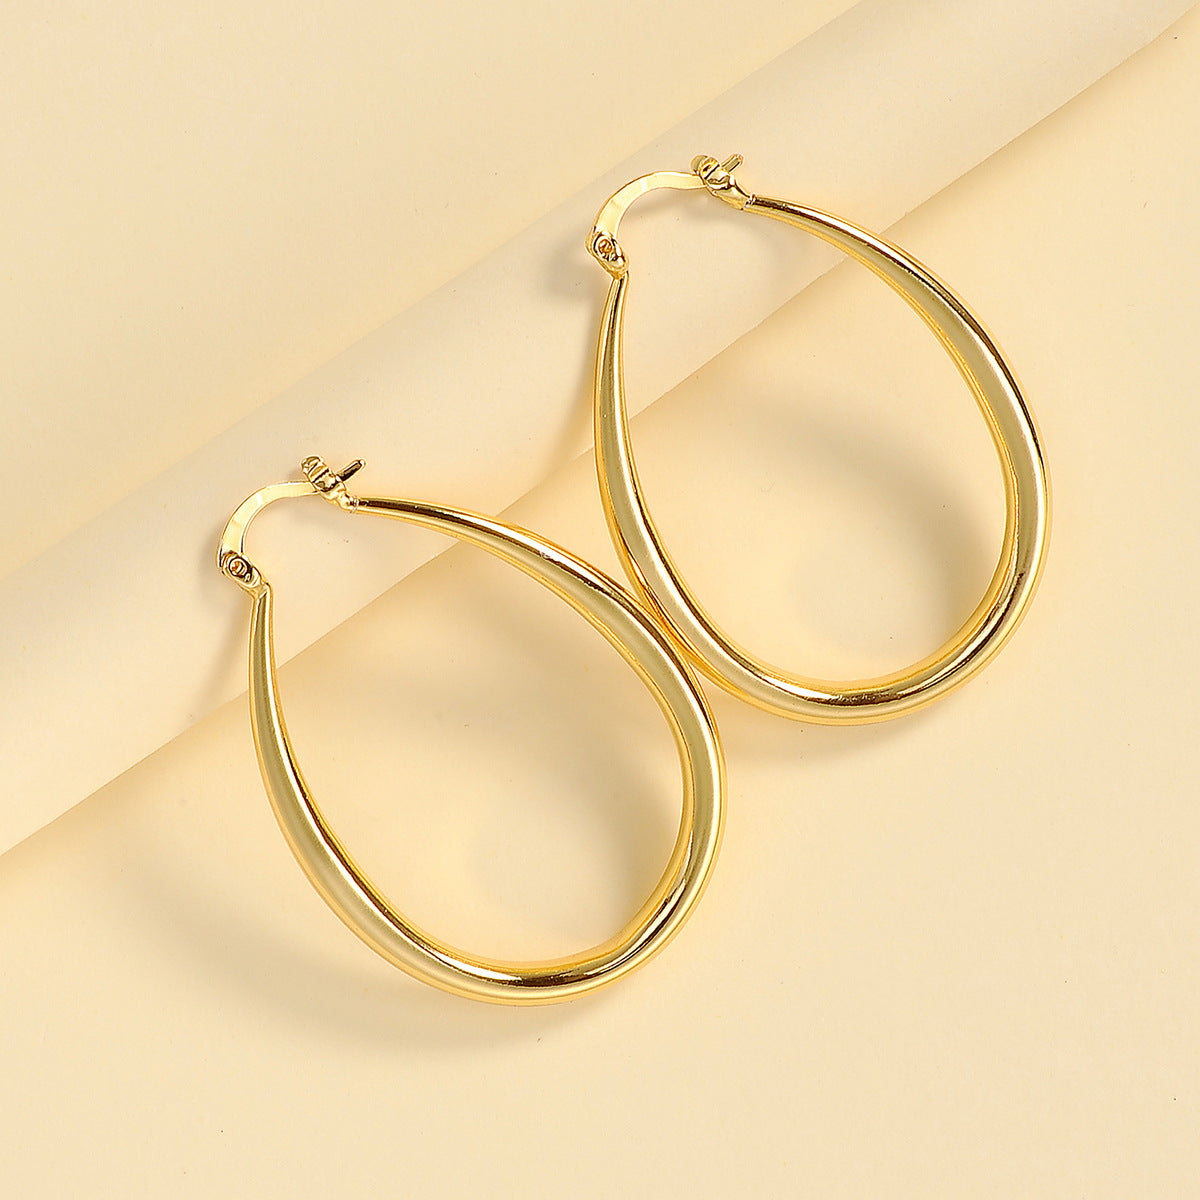 Geometric oval earrings earrings earrings